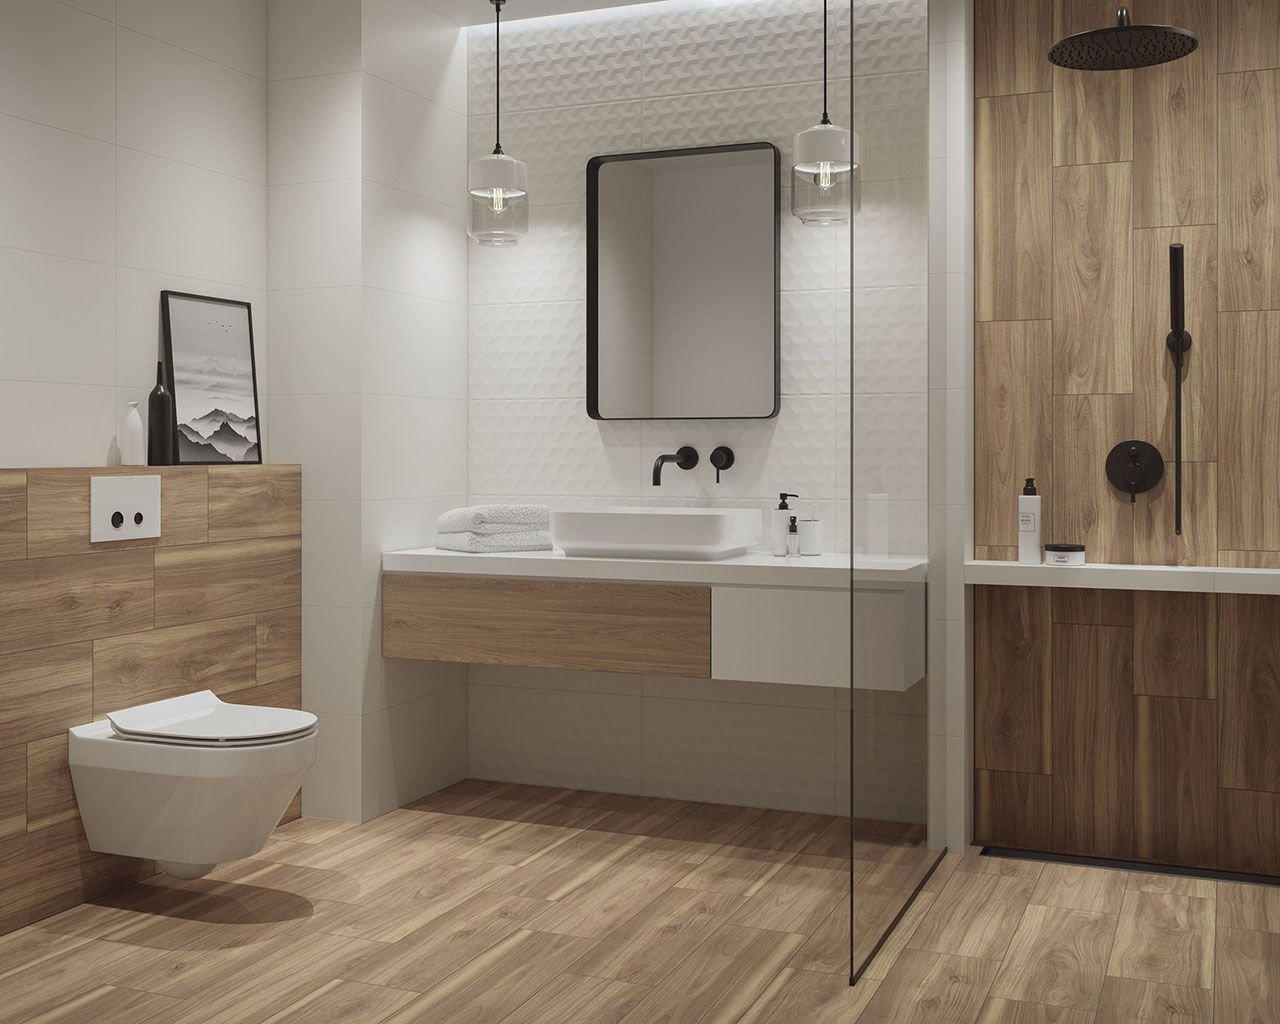 #Koupelna #Kuchyně #dřevo #Moderní styl #béžová #Velký formát #Matná dlažba #700 - 1000 Kč/m2 #Ceramika Paradyz #Lightmood